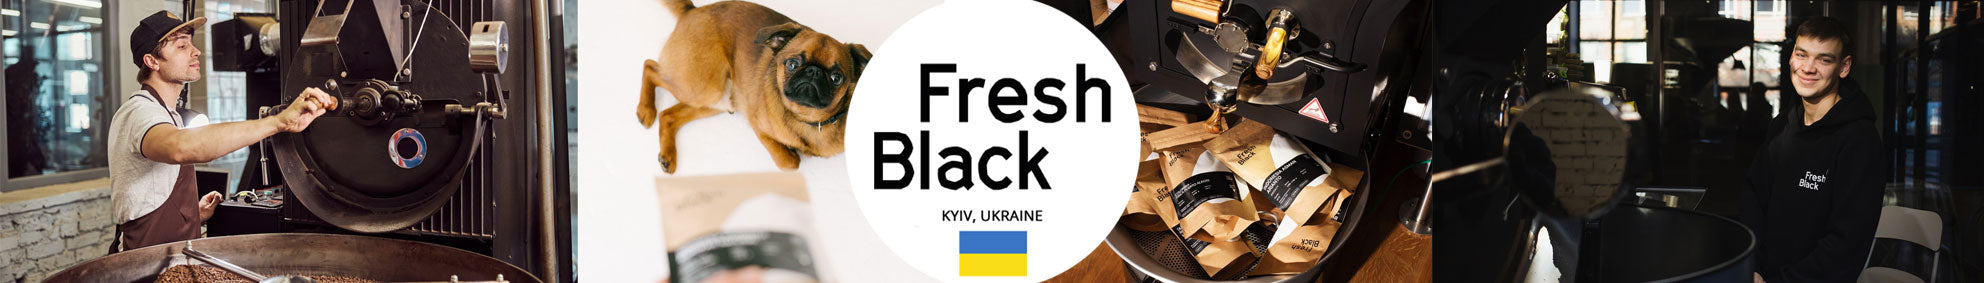 Fresh Black Coffee Roasters Kyiv and Lviv Ukraine on UK Best Coffee Subscription